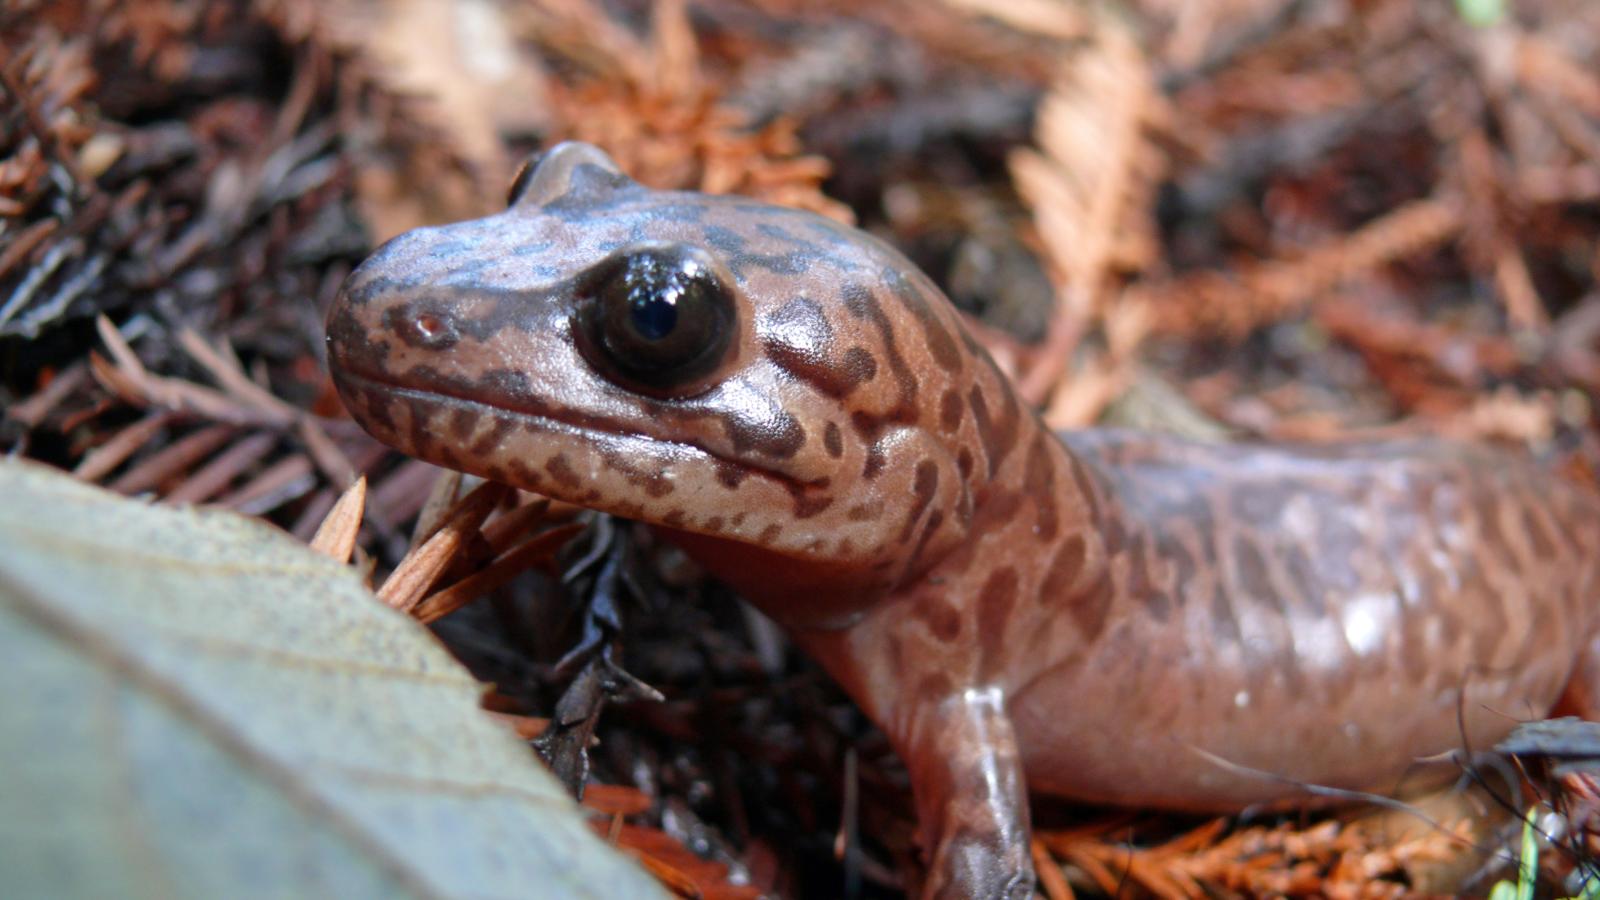 Closeup photo of a California giant salamander